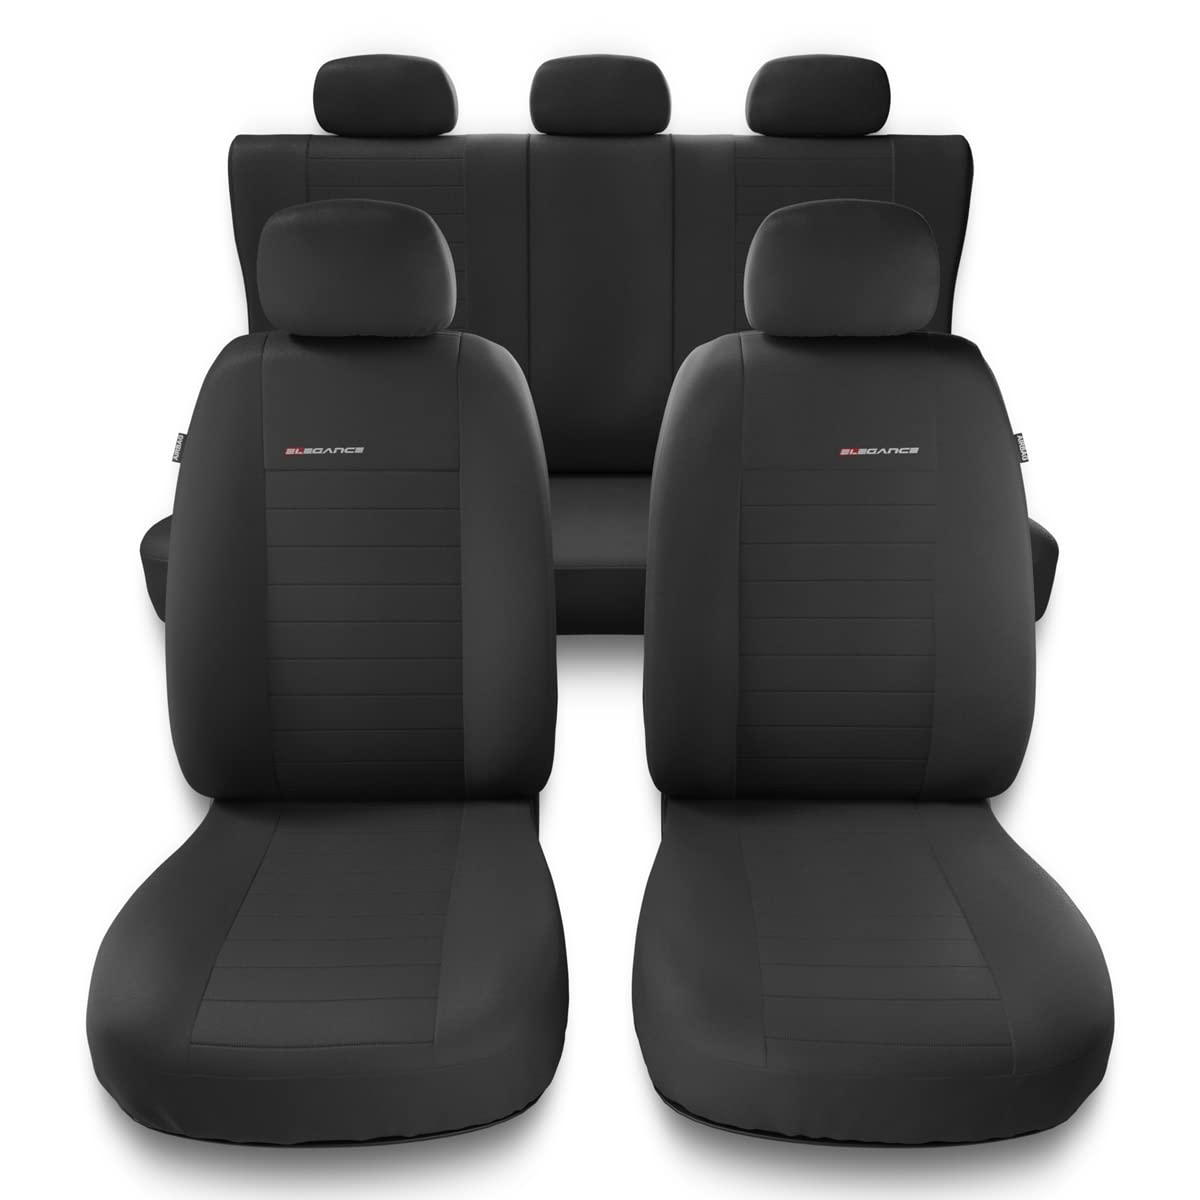 Mossa - Universal Sitzbezüge Auto kompatibel mit Seat Ibiza I, II, III, IV, V (1984-2019) - Autositzbezüge Schonbezüge für Autositze - UNE-4 von Mossa